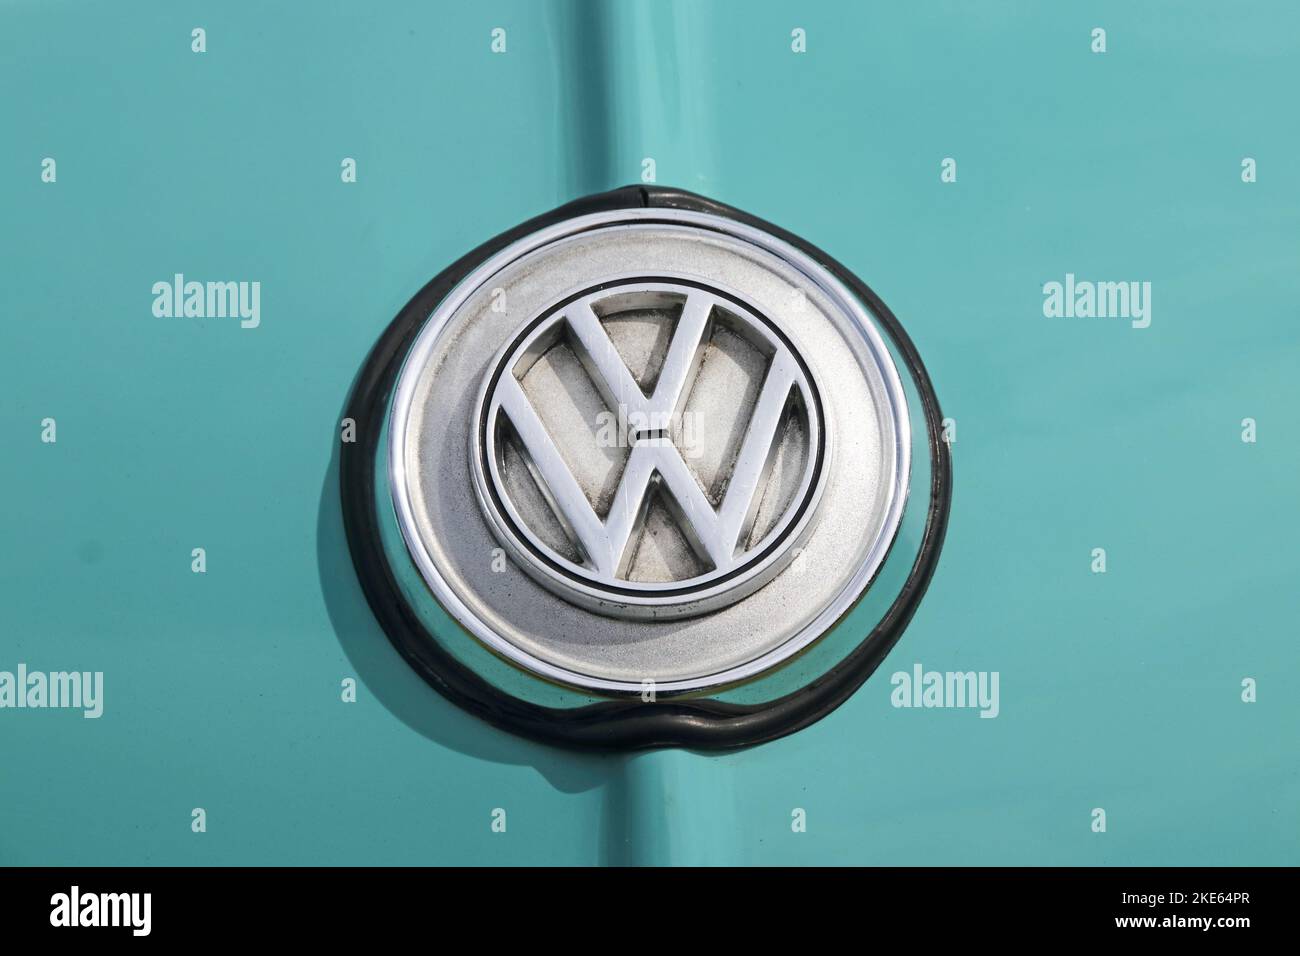 Volkswagen car badge Stock Photo